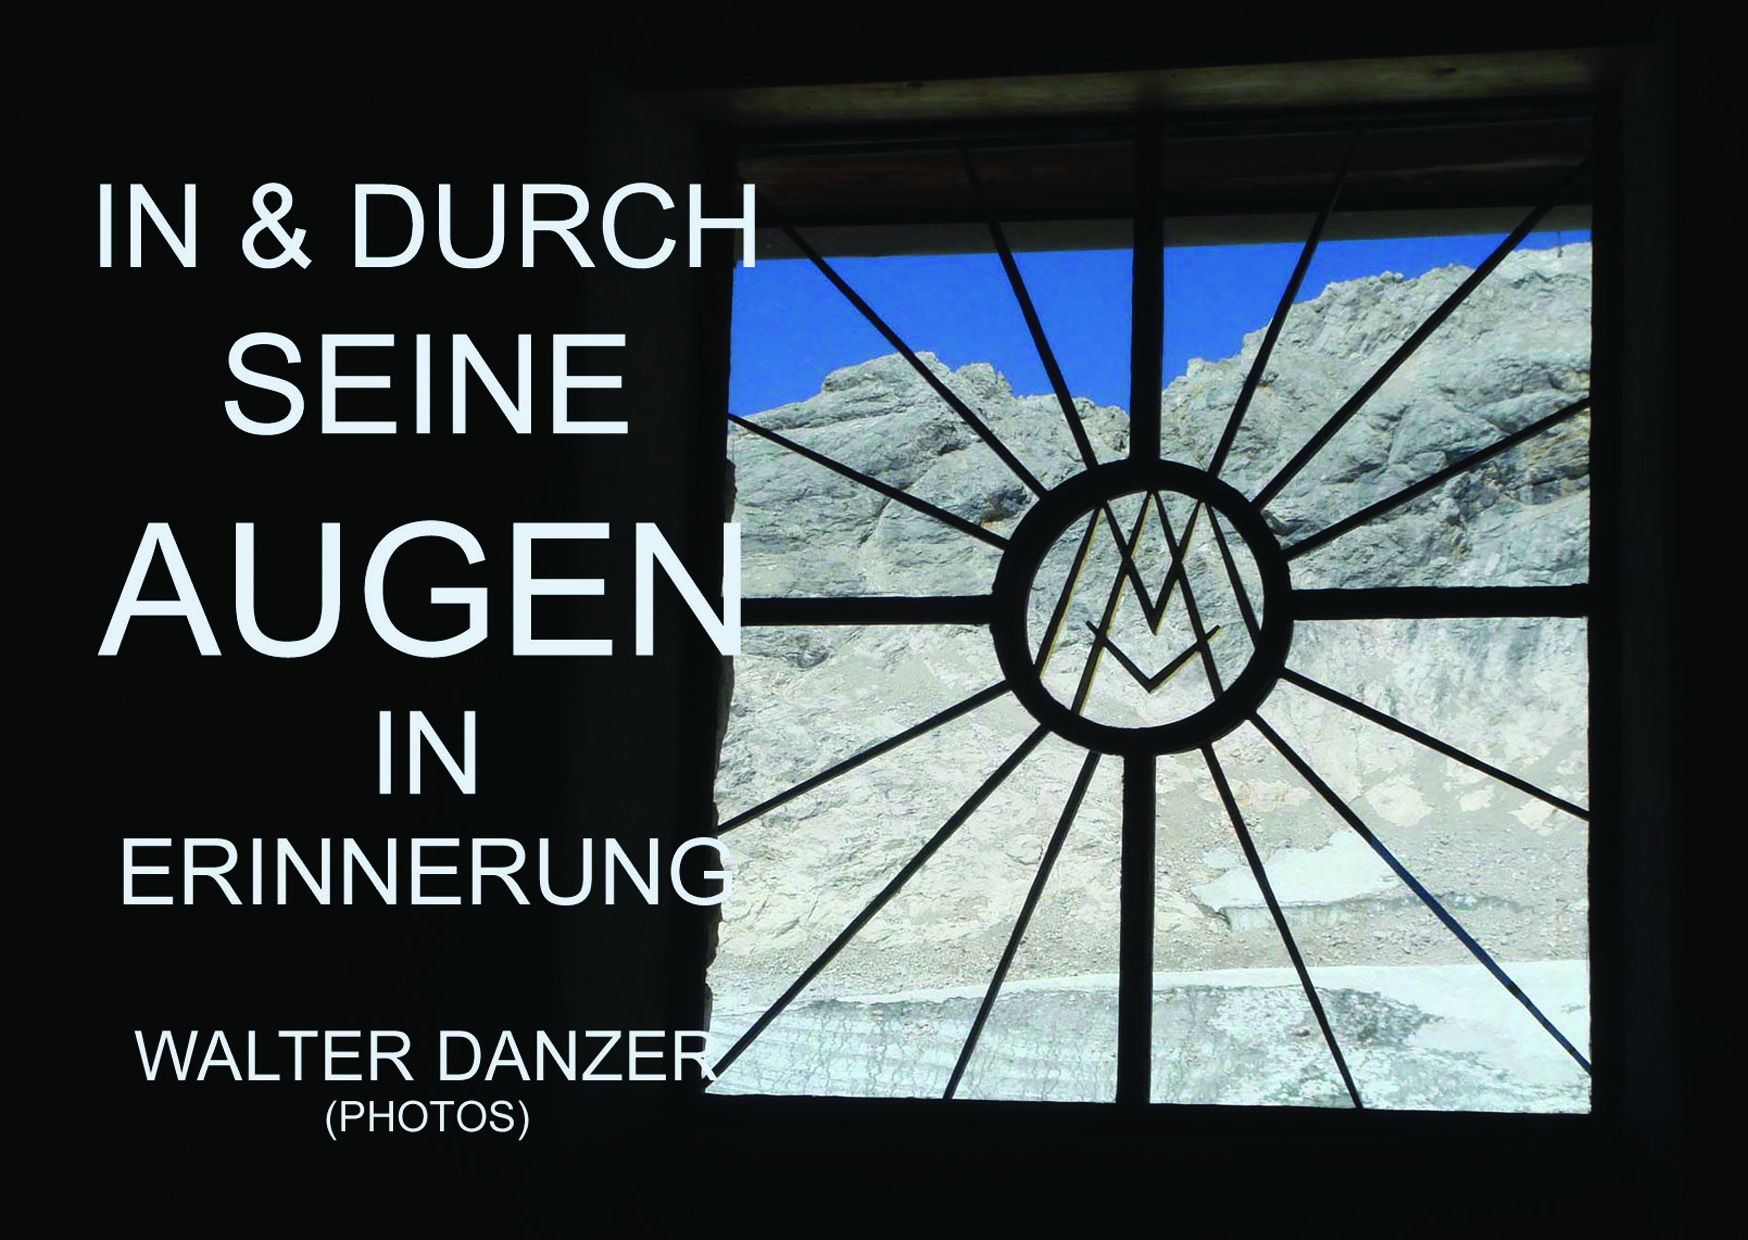 IN & DURCH SEINE AUGEN IN ERINNERUNG ; Walter Danzer